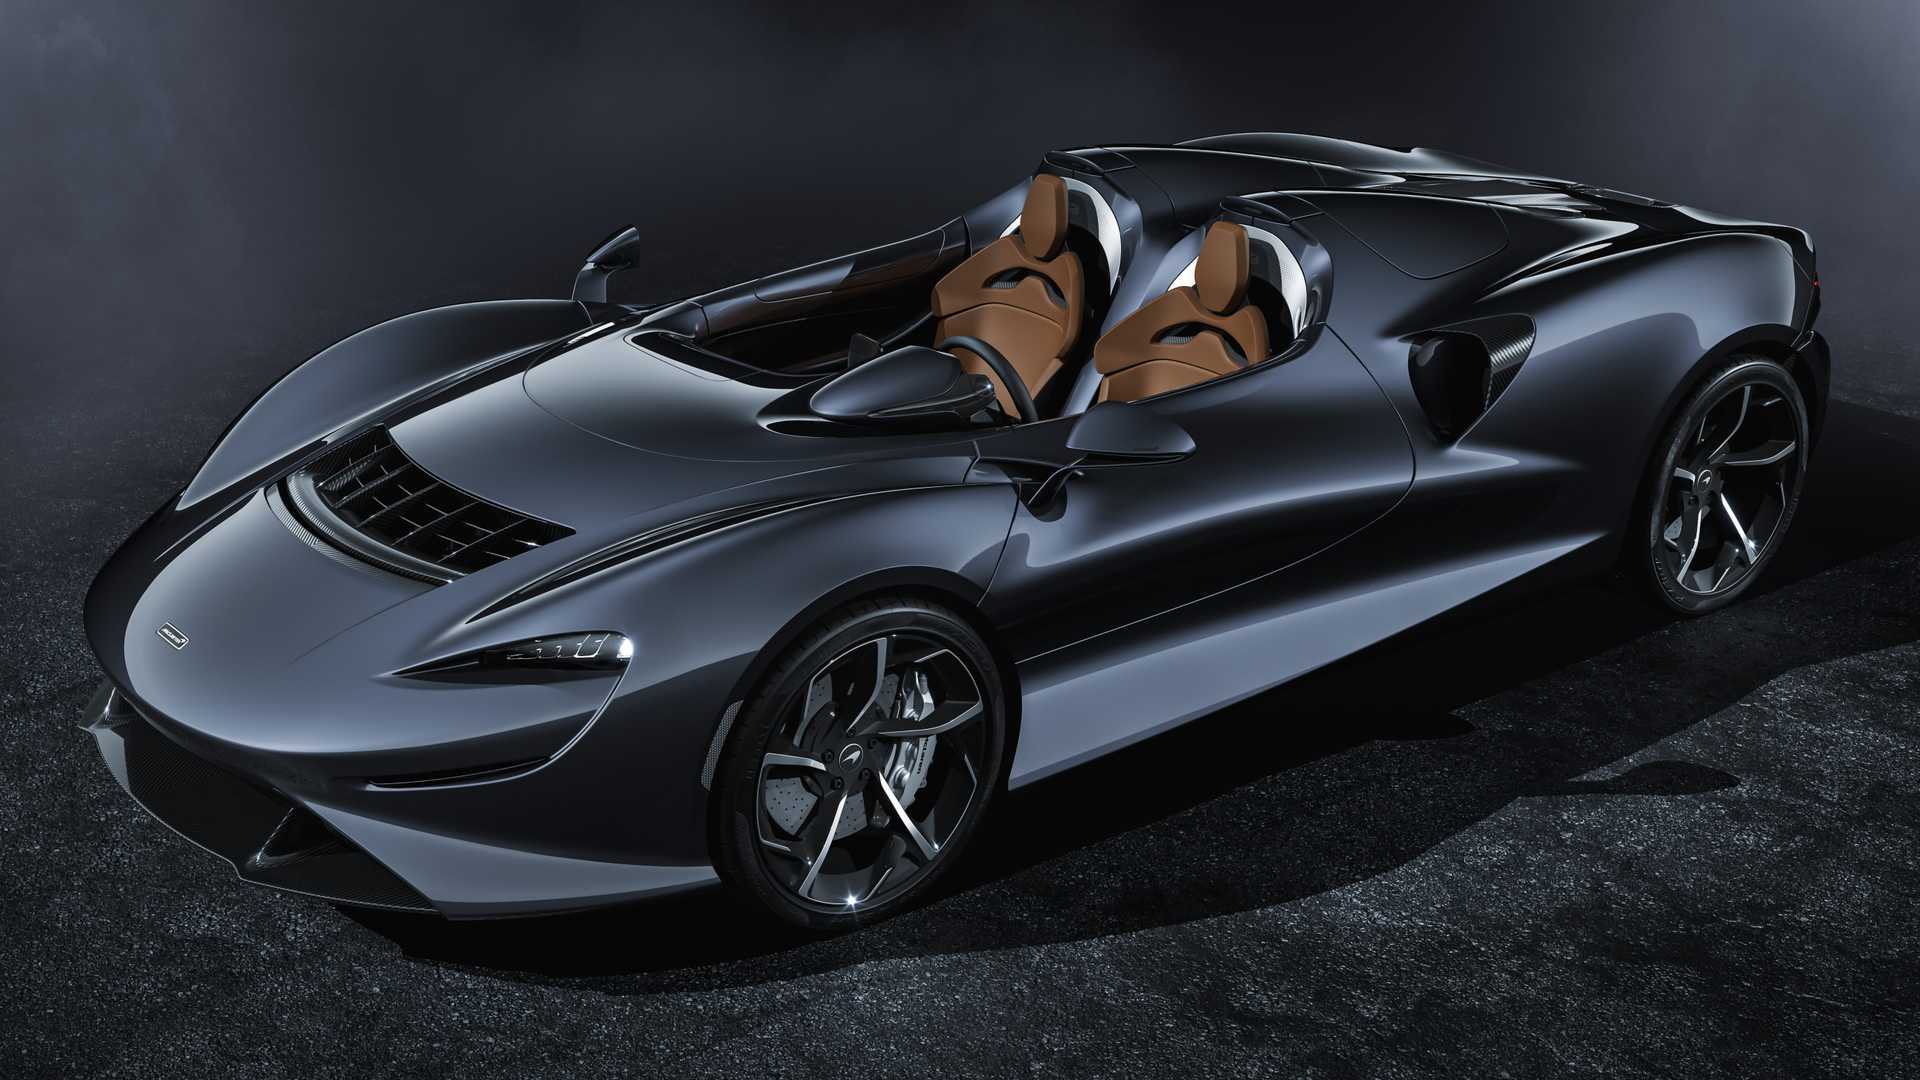 Siêu xe McLaren Elva trình làng, không kính chắn gió, giá 1,69 triệu USD